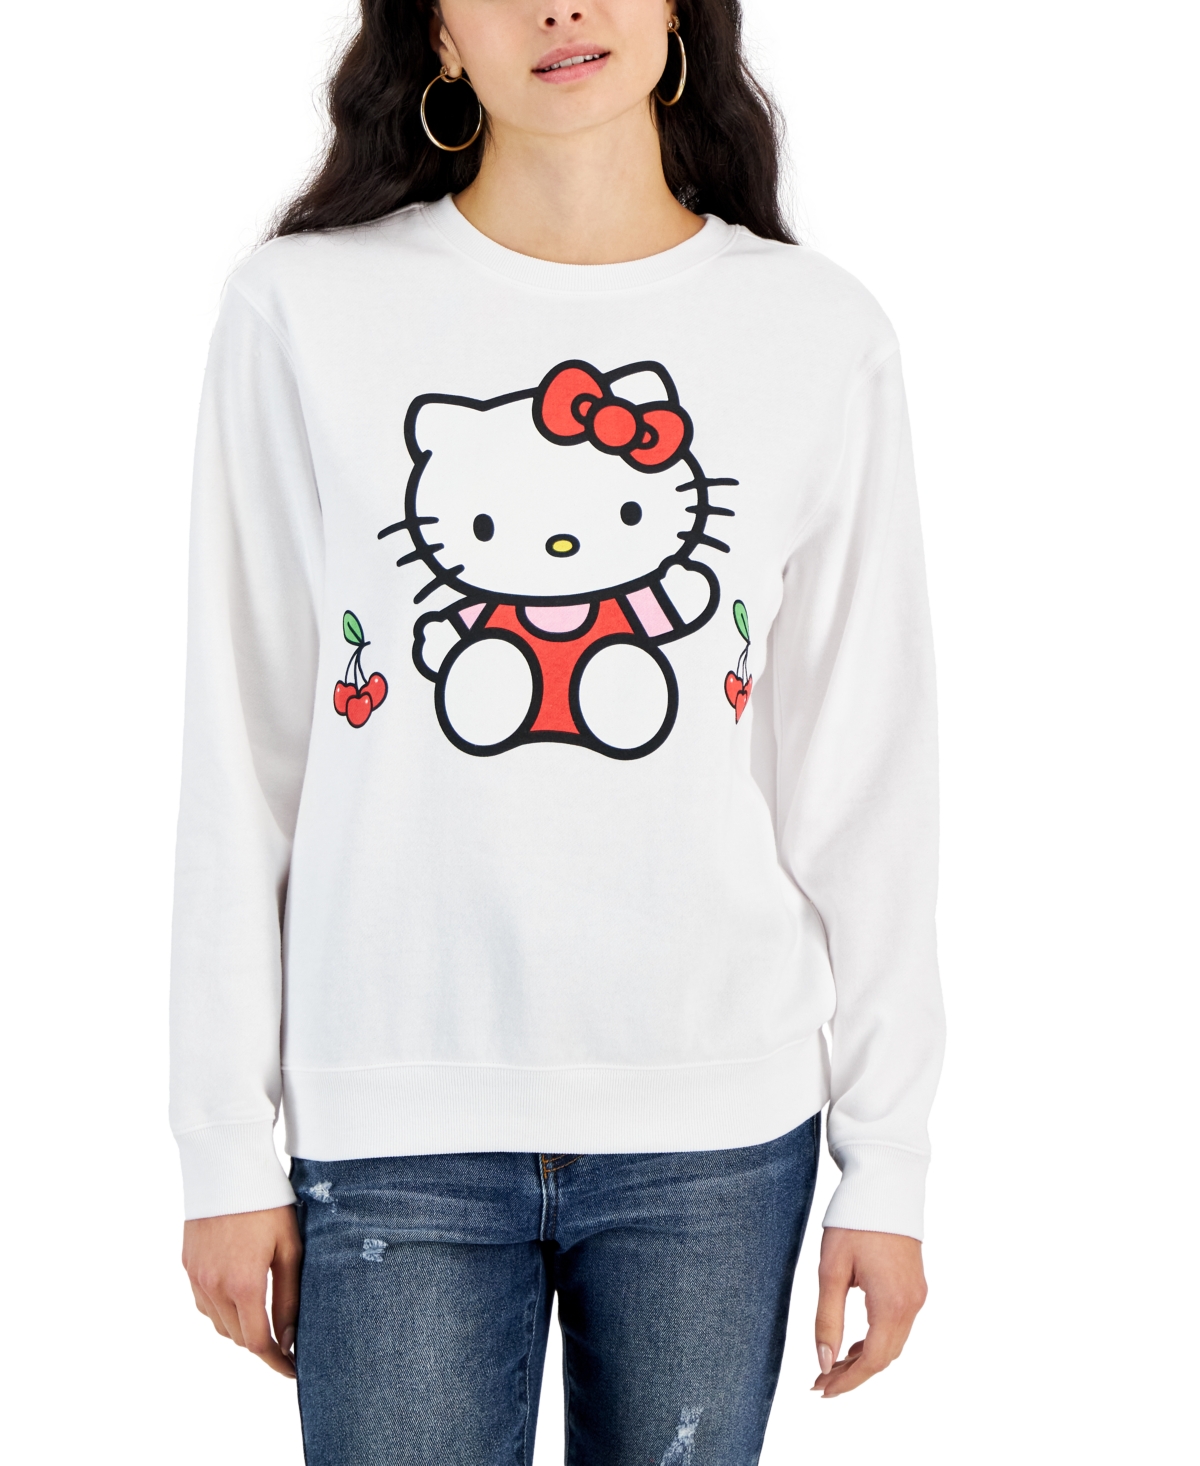 Juniors' Hello Kitty Cherry Graphic Sweatshirt - White